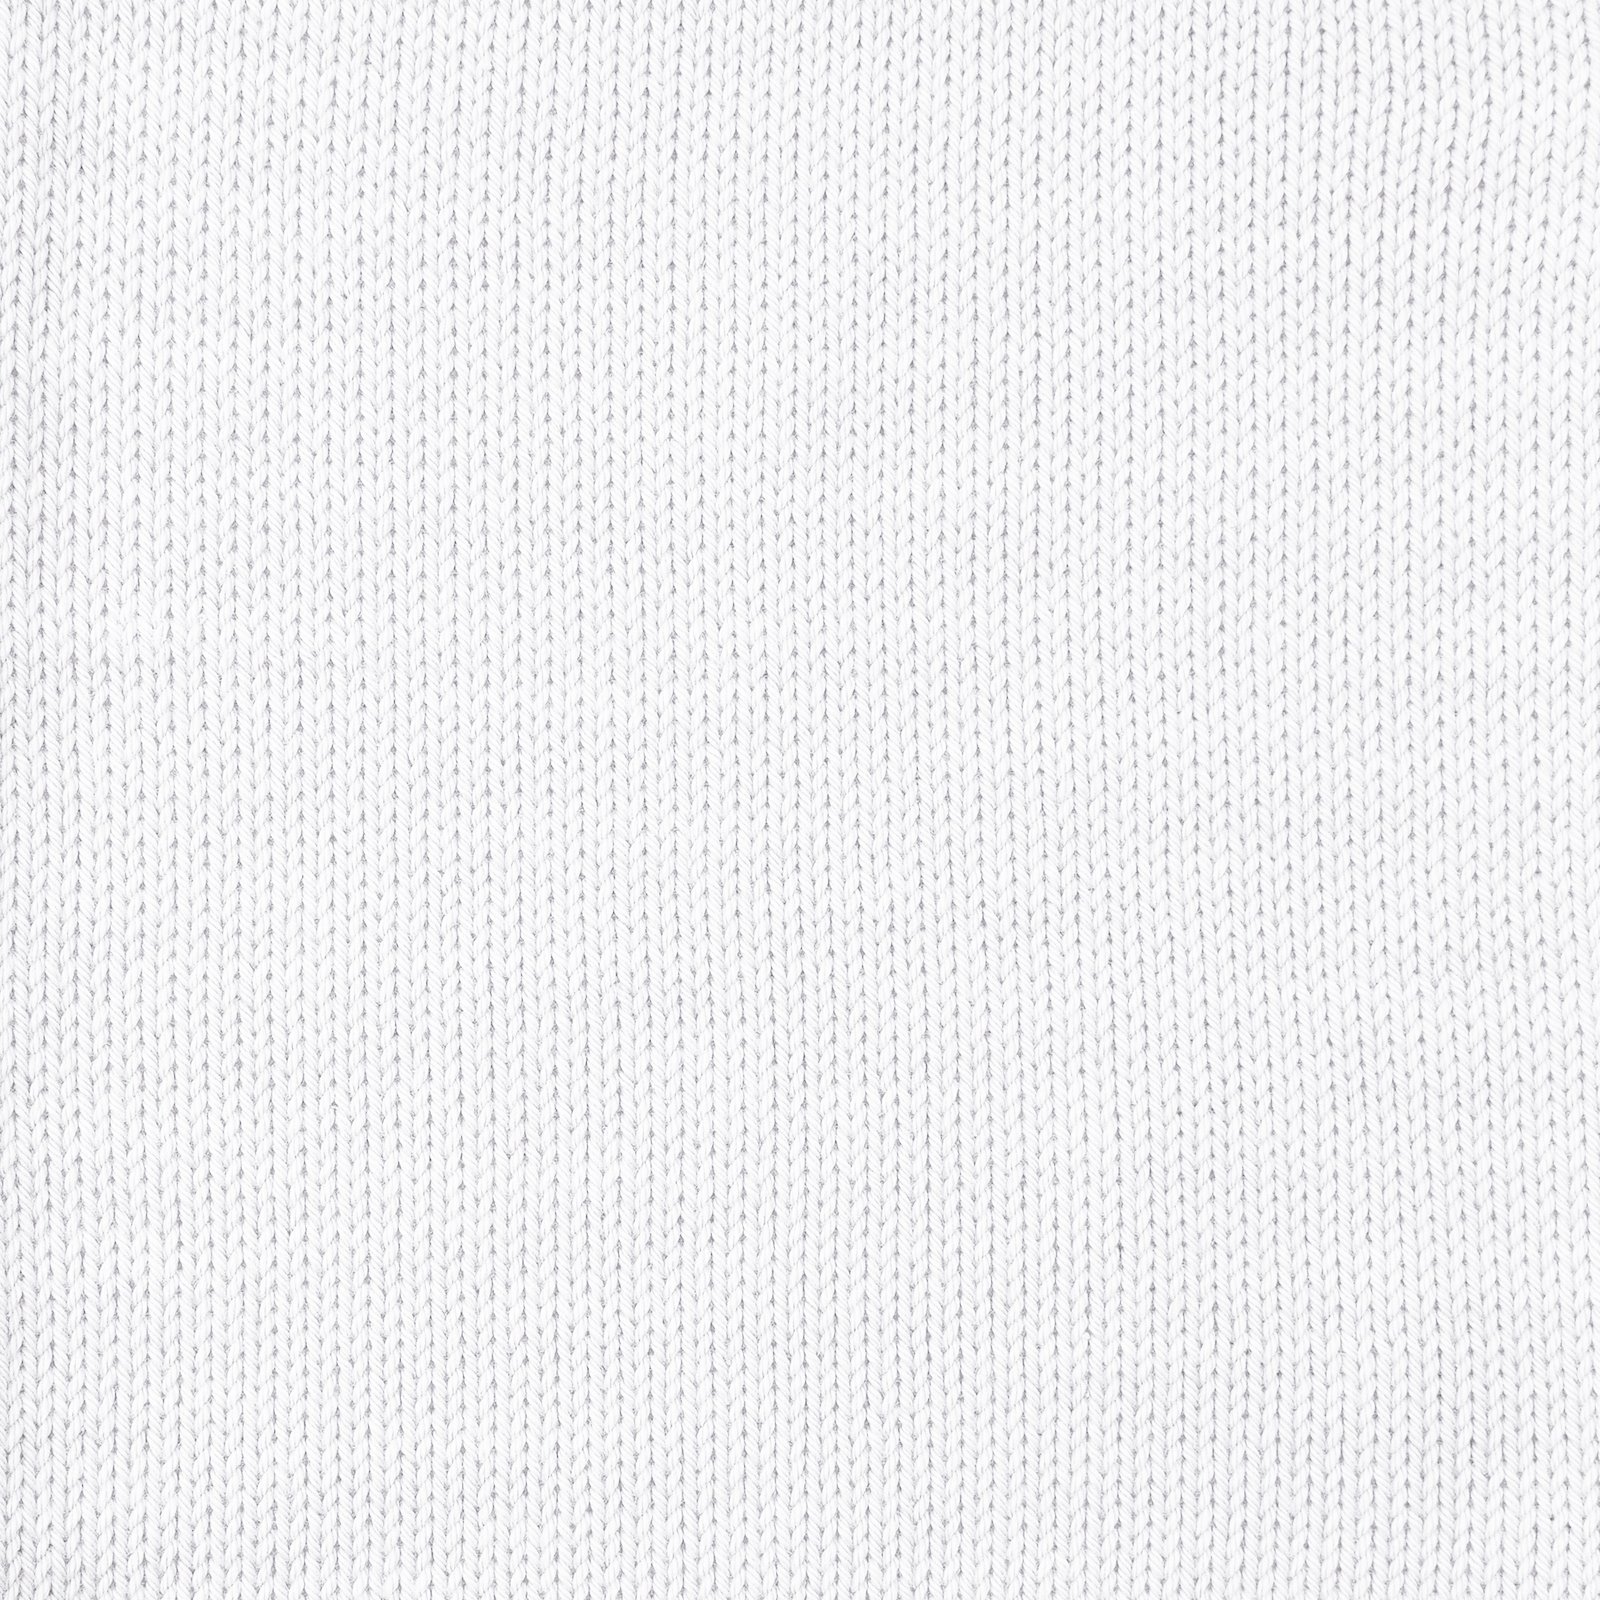 FRAYA, 100% cotton 8/4  yarn  "Colourful", white 90060001_sskit